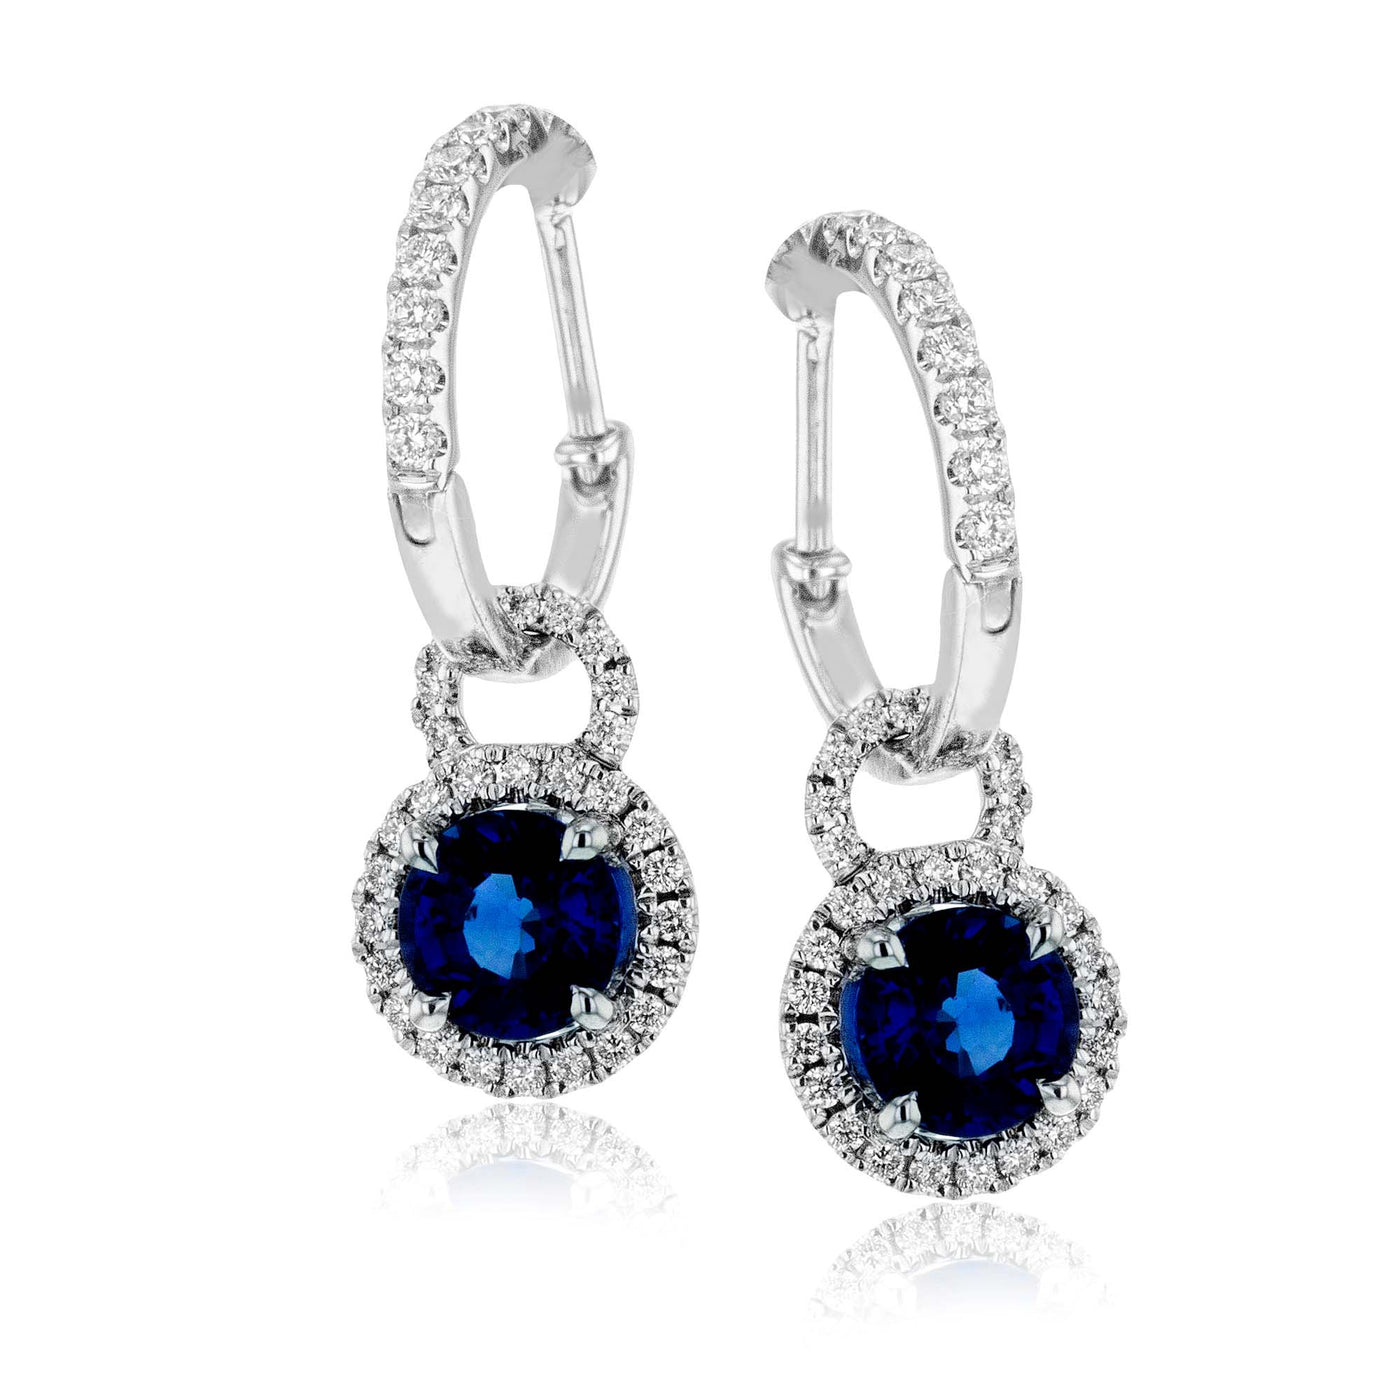 Simon G Jewelry 18 Karat White Gold Drop Earrings Gemstone Earrings LME1566